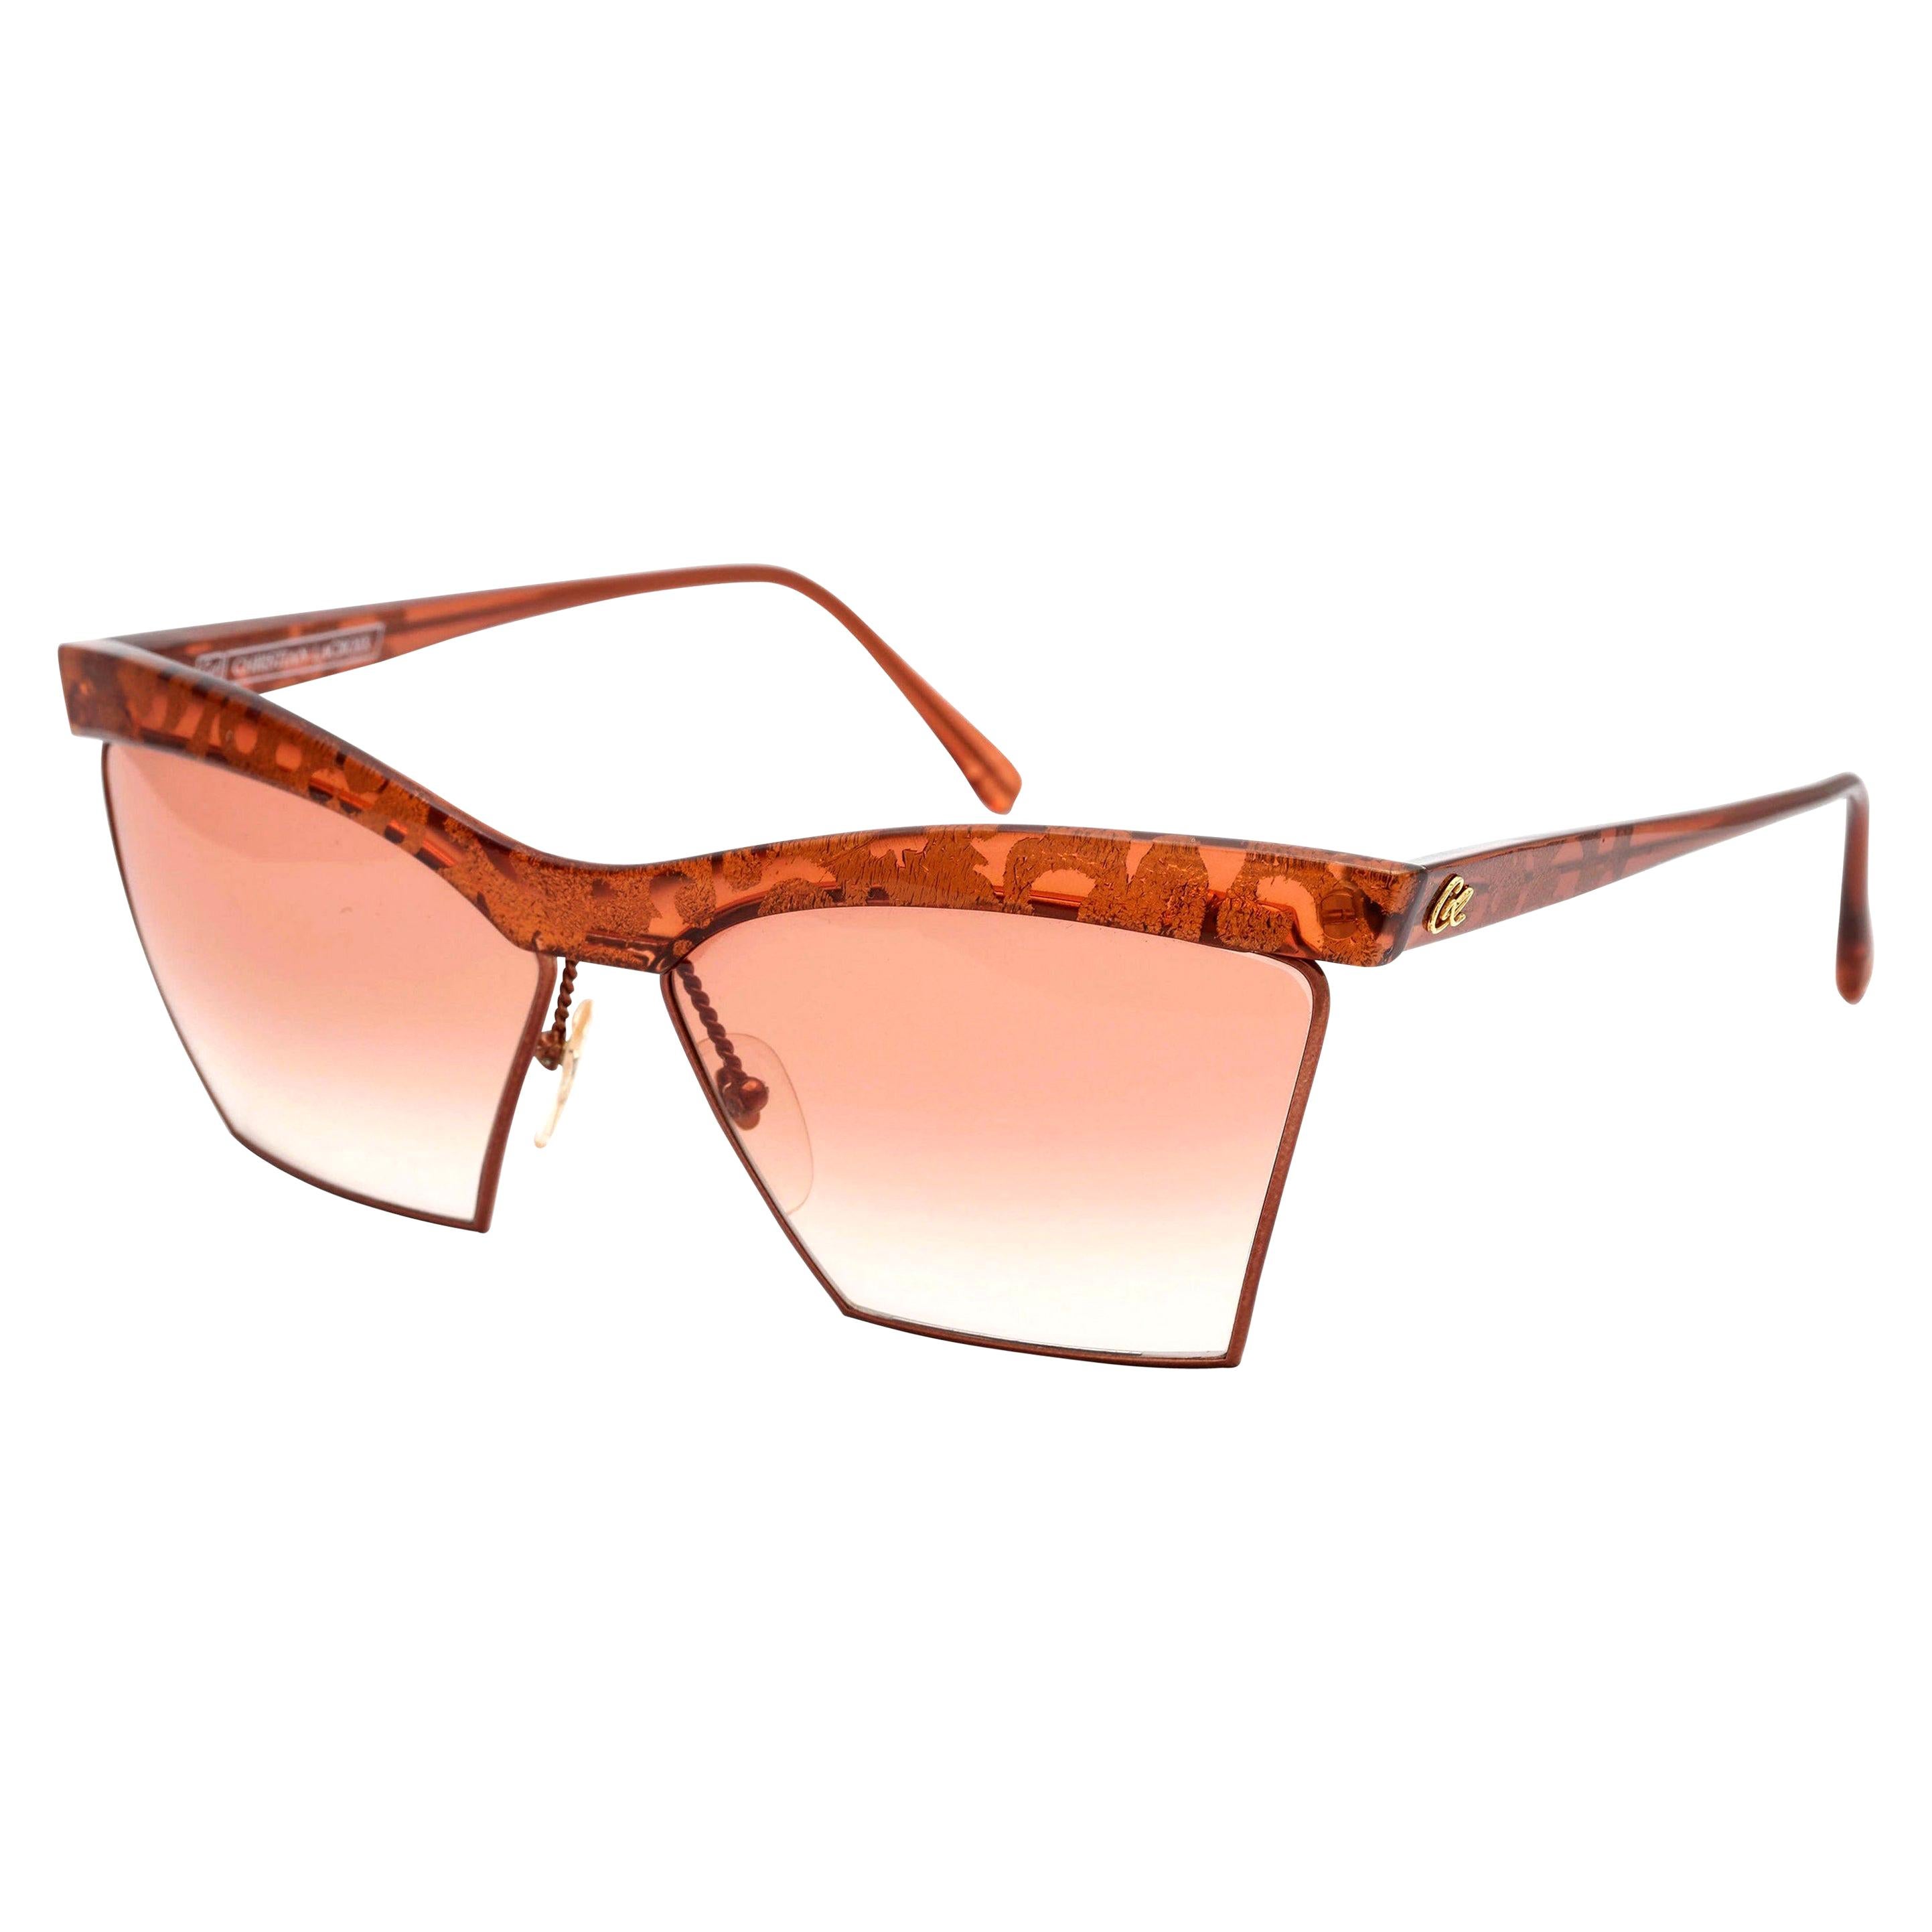 Christian Lacroix Vintage Sunglasses 7315 13 For Sale